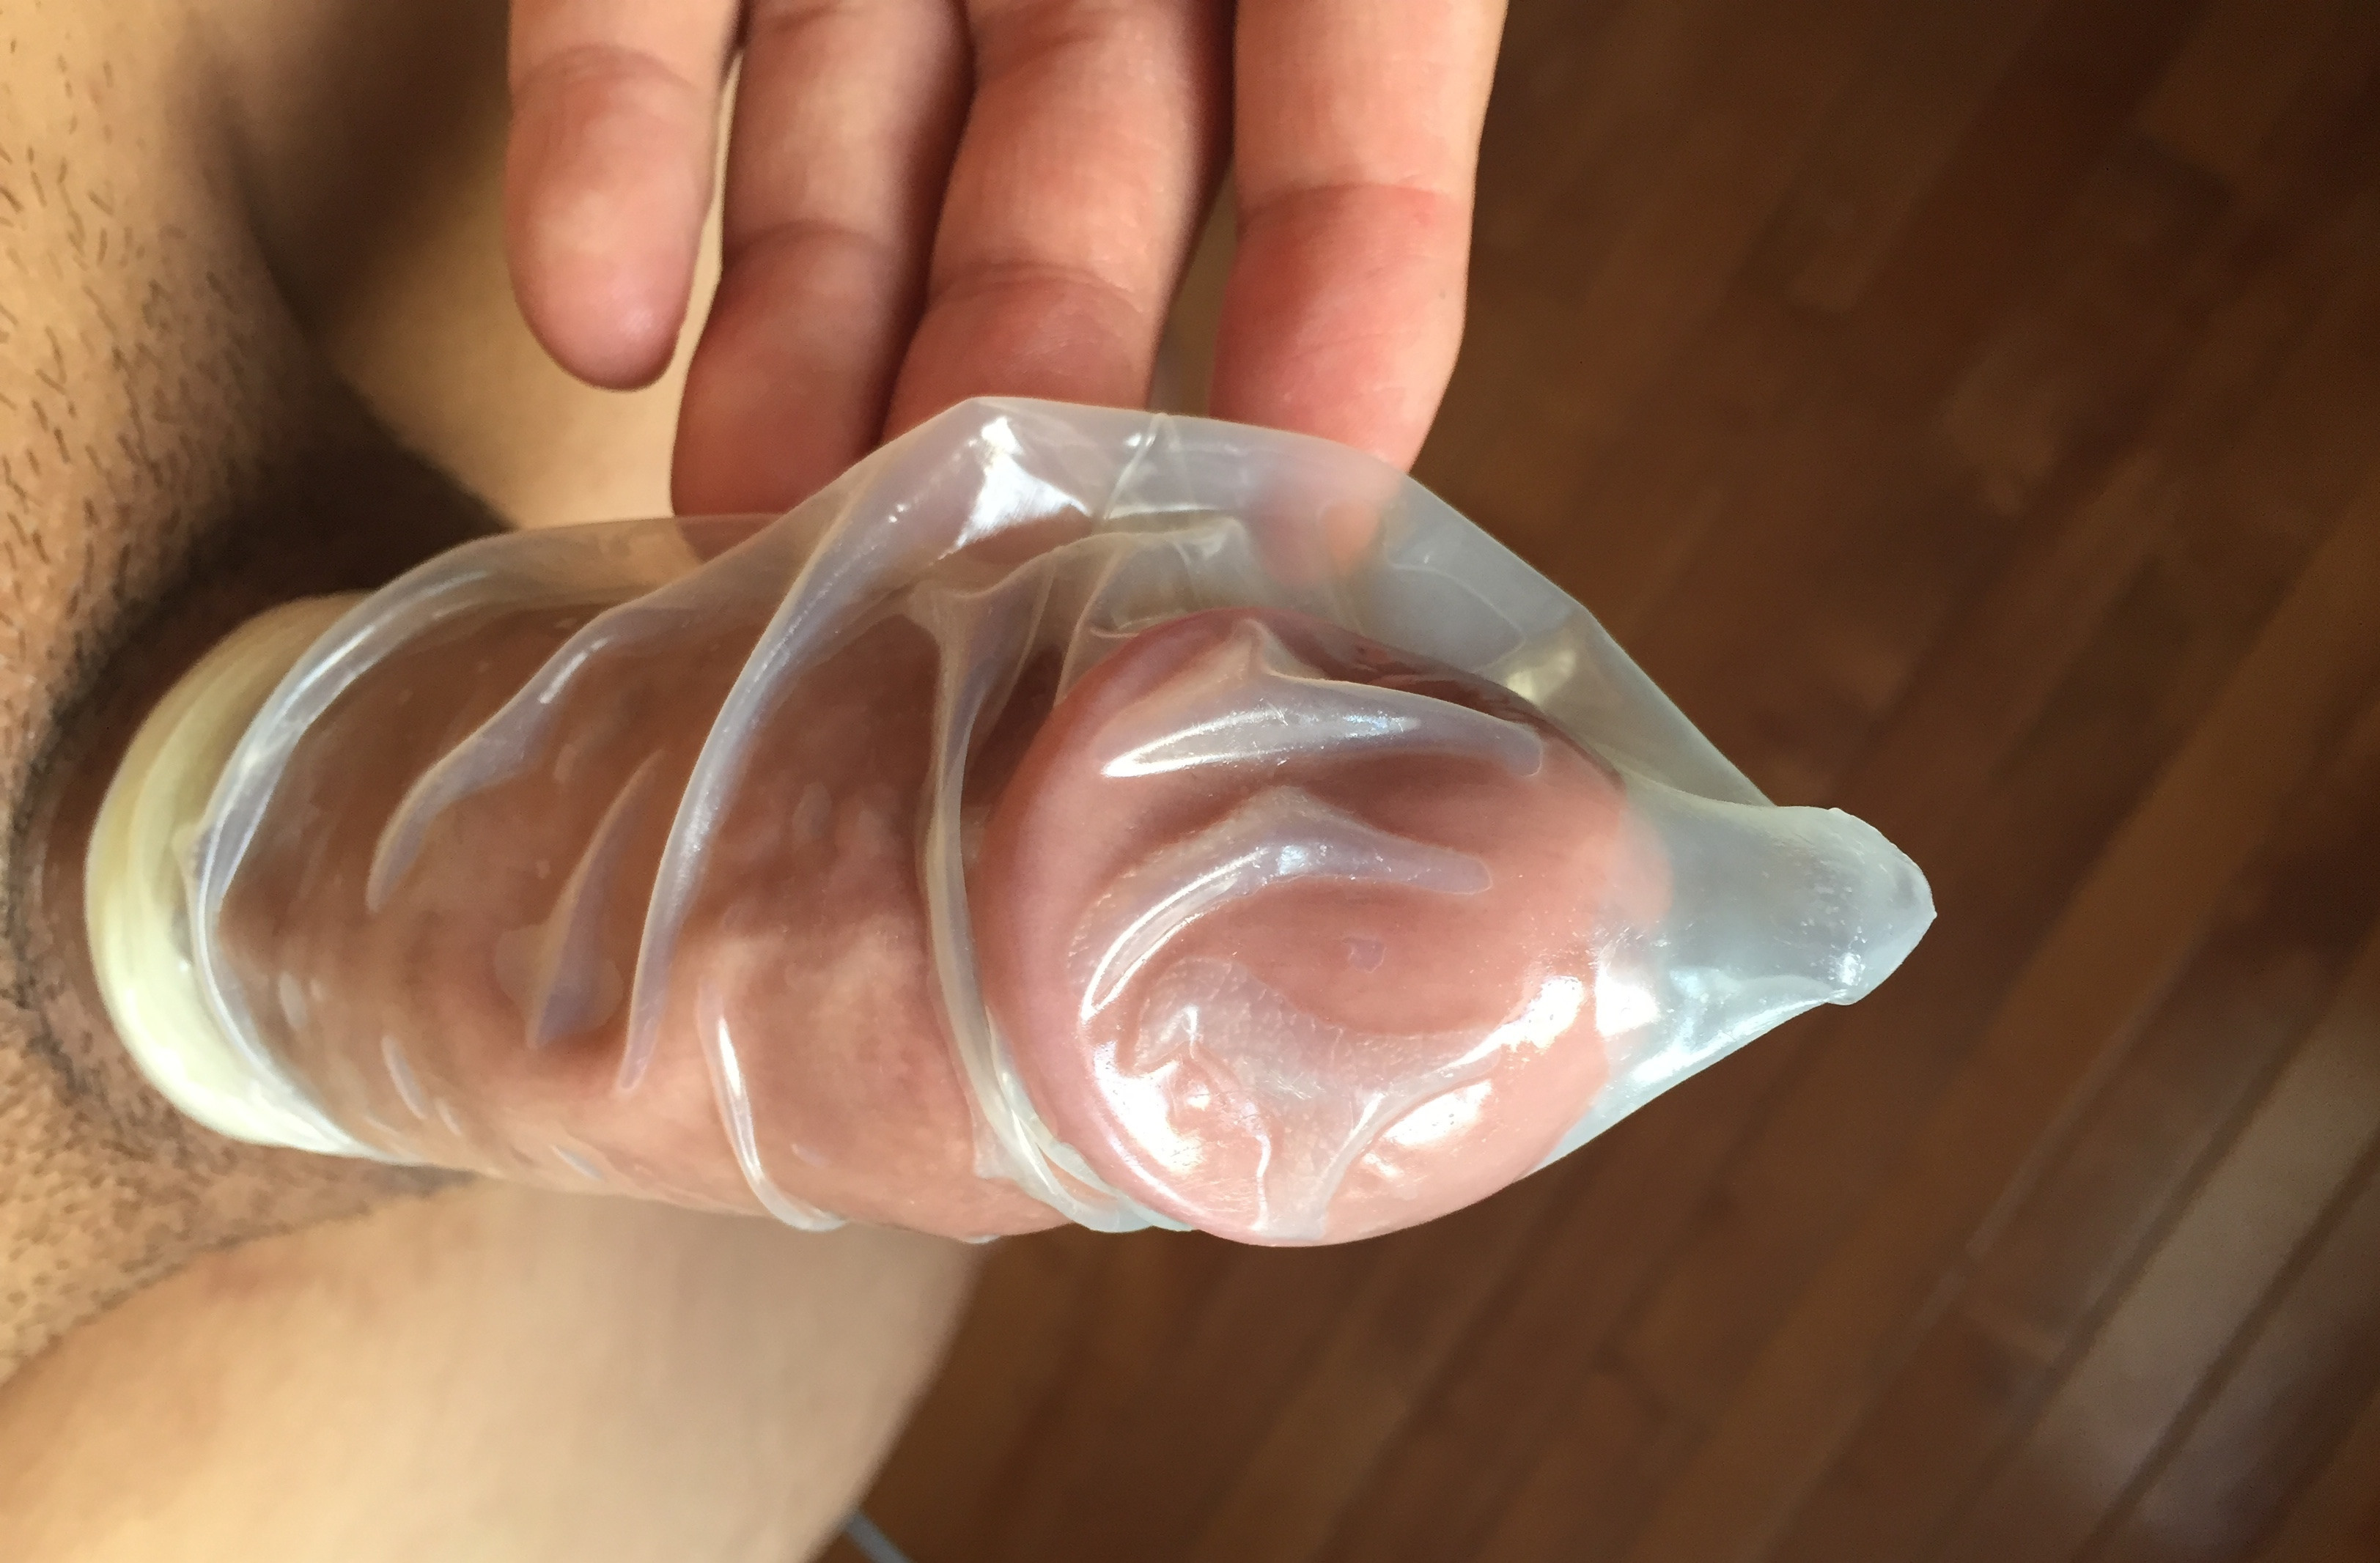 онлайн на член надевают презерватив фото 75